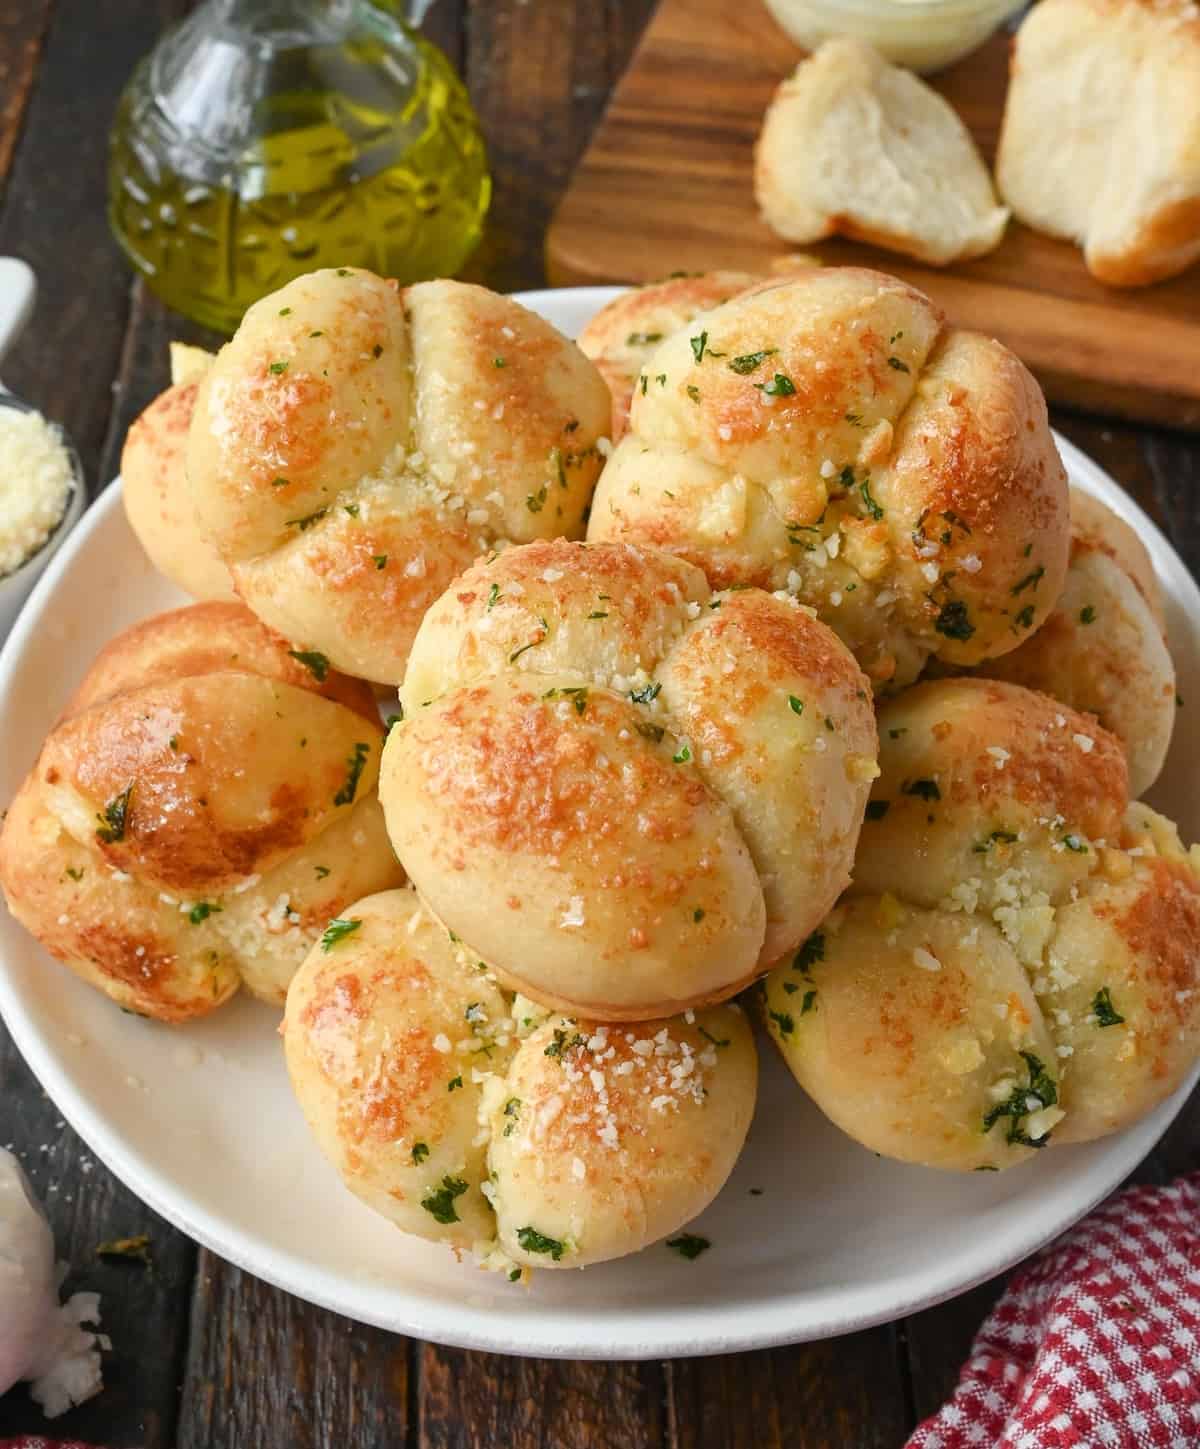 Garlic parmesan dinner rolls on a platter.